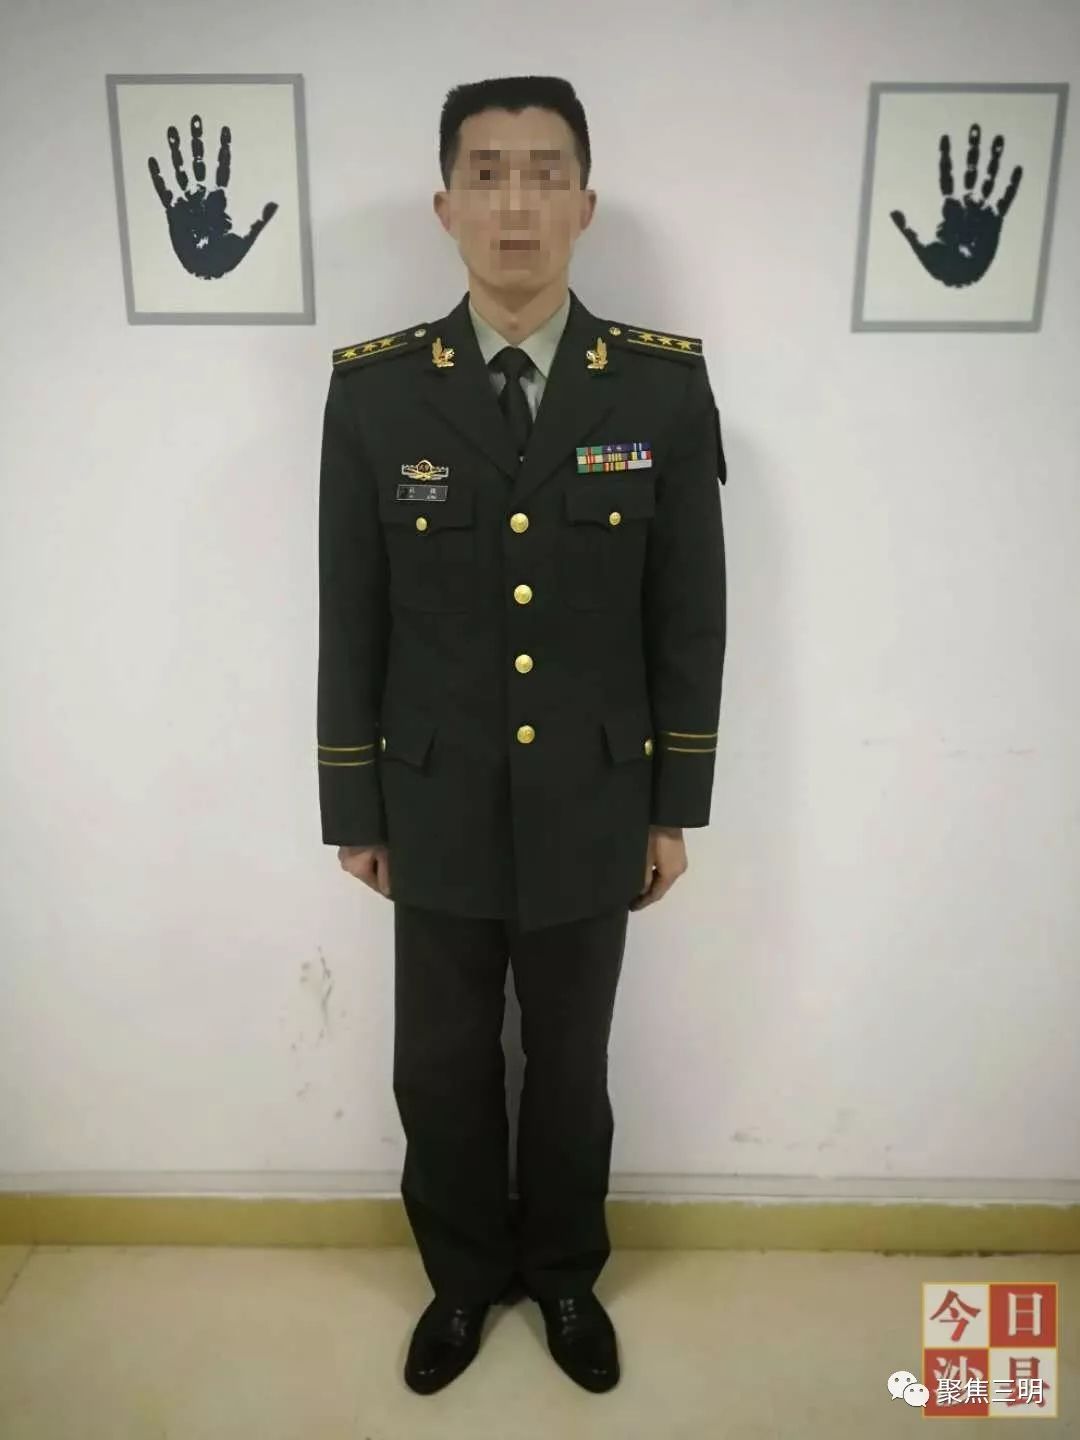 发生了什么一名武警上校在三明北站被拘留了